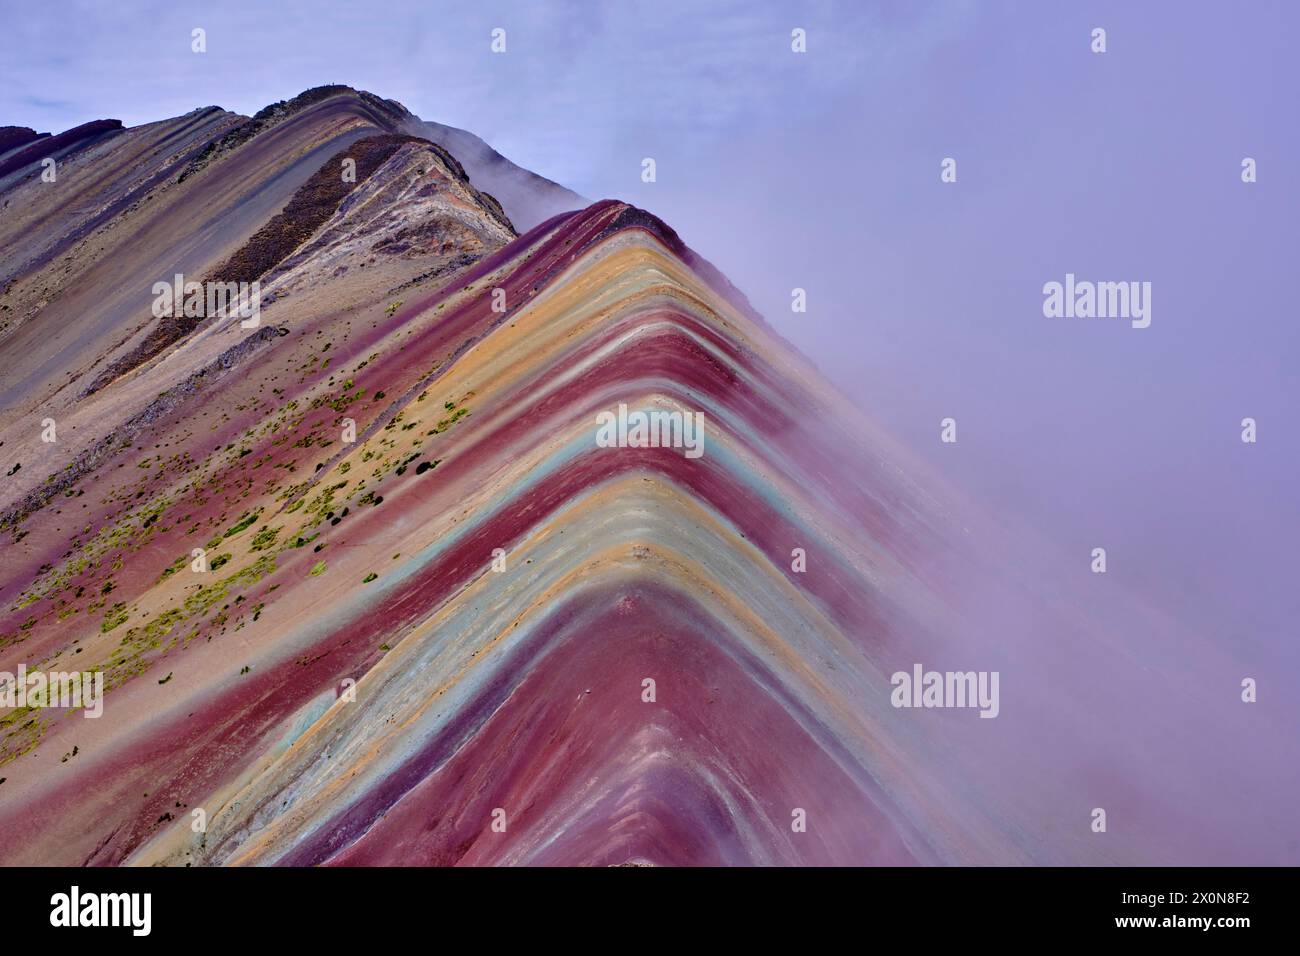 Perù, provincia di Cuzco, Vinicunca, Montana de siete Colores o Rainbow Mountain Foto Stock